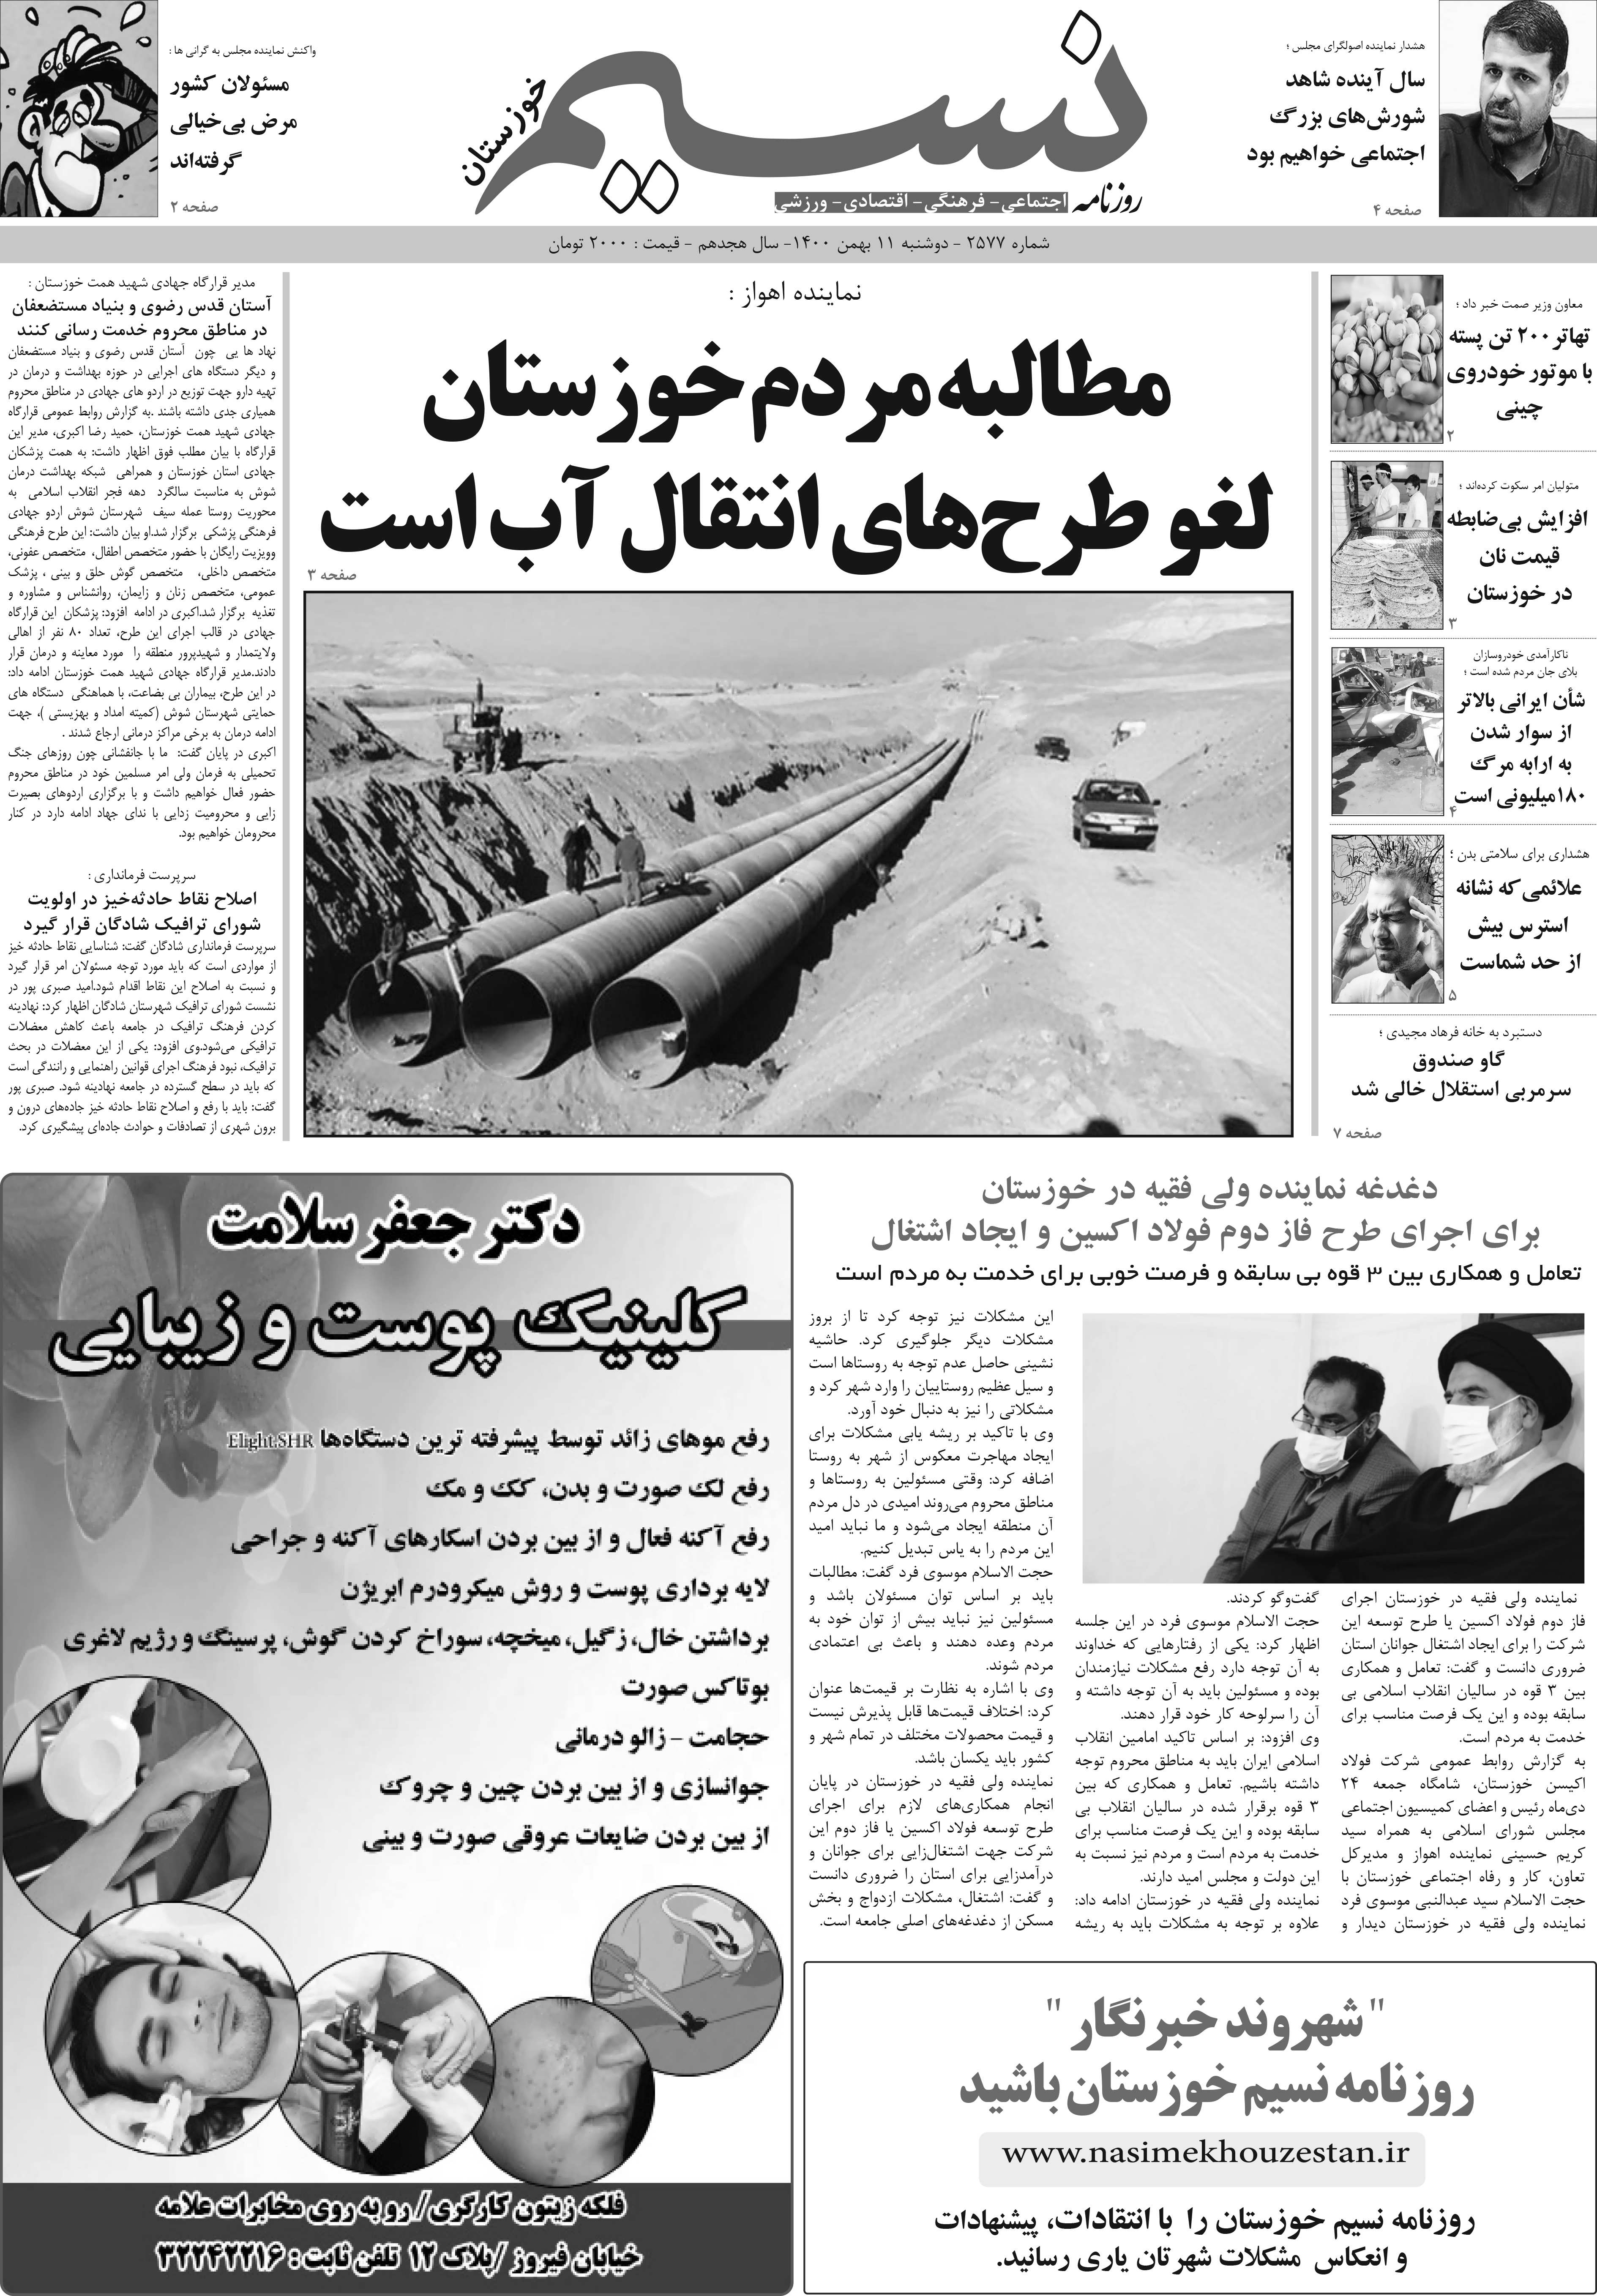 صفحه اصلی روزنامه نسیم شماره 2577 